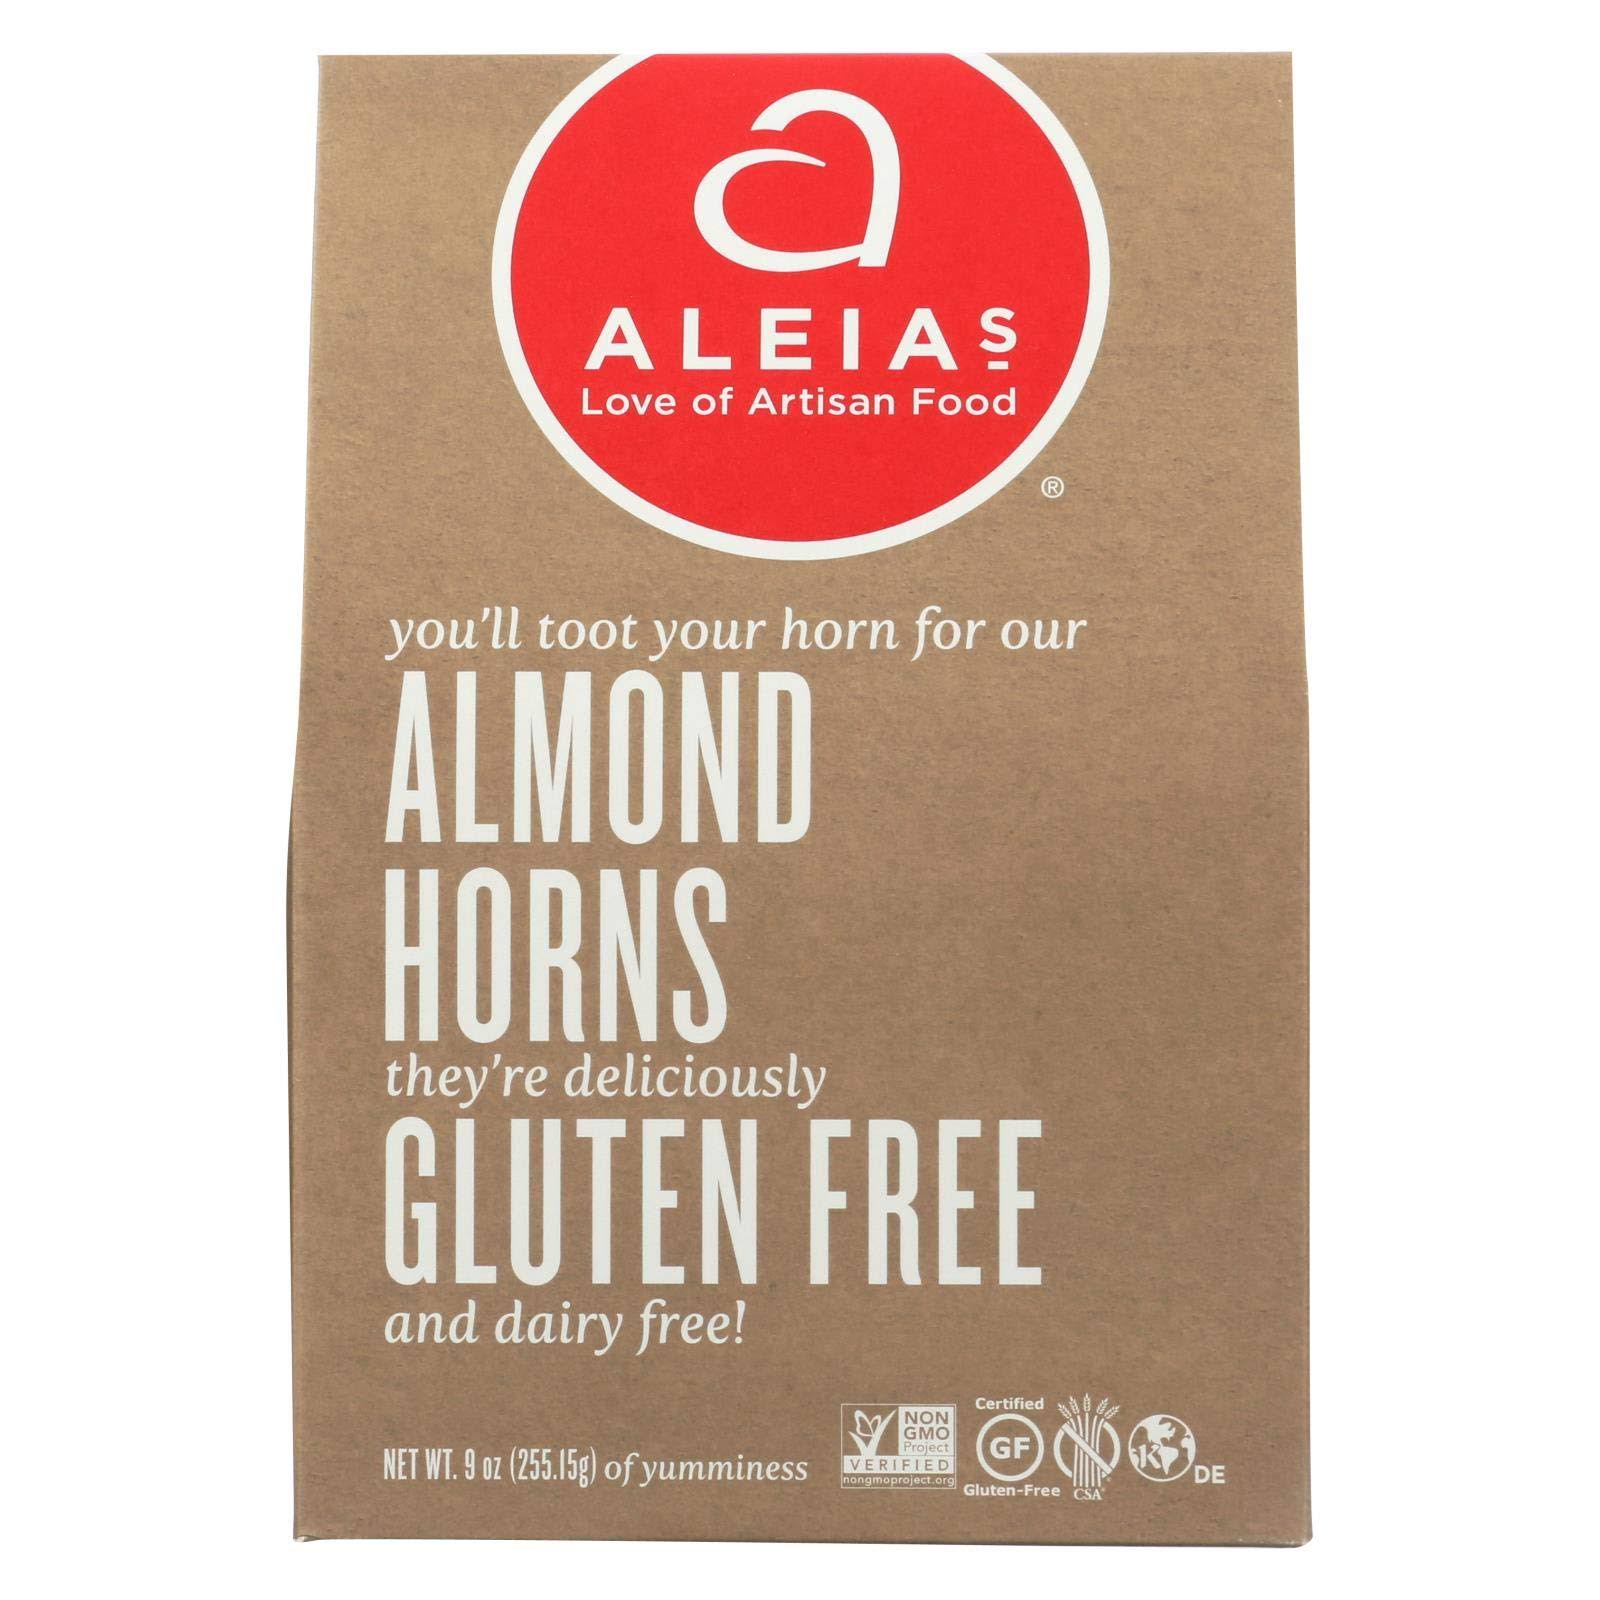 Aleias Gluten Free Almond Horn Cookies - 9oz